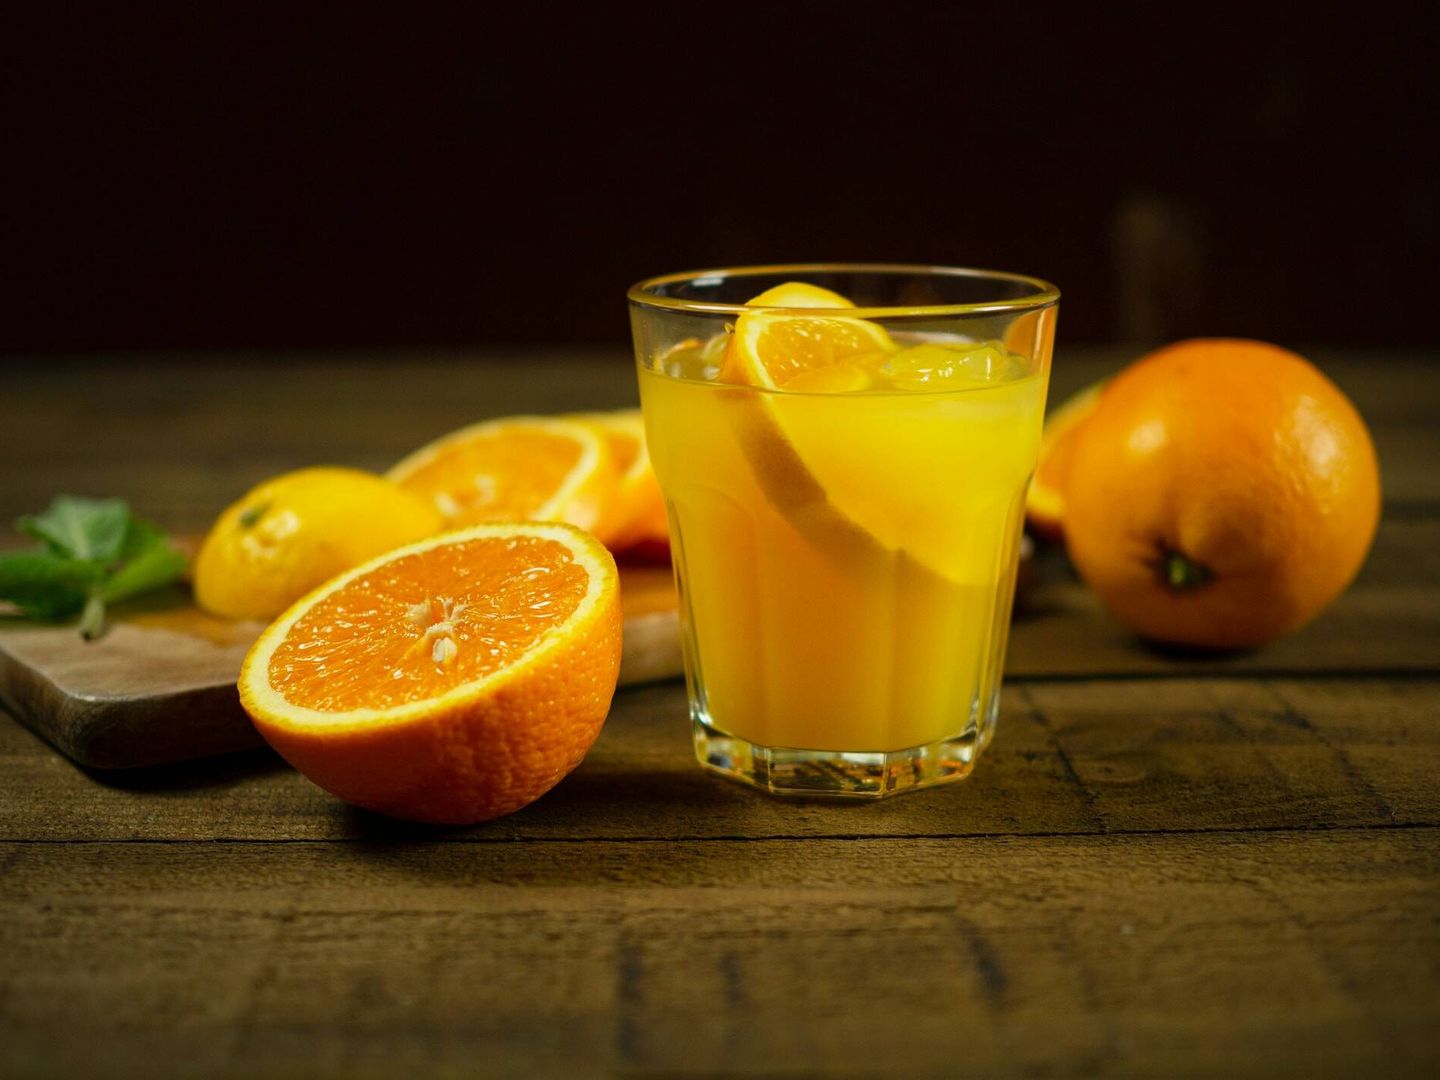 El zumo de naranja y otras bebidas con azúcar no son recomendables para antes de dormir. (Mateusz Feliksik para Unsplash)